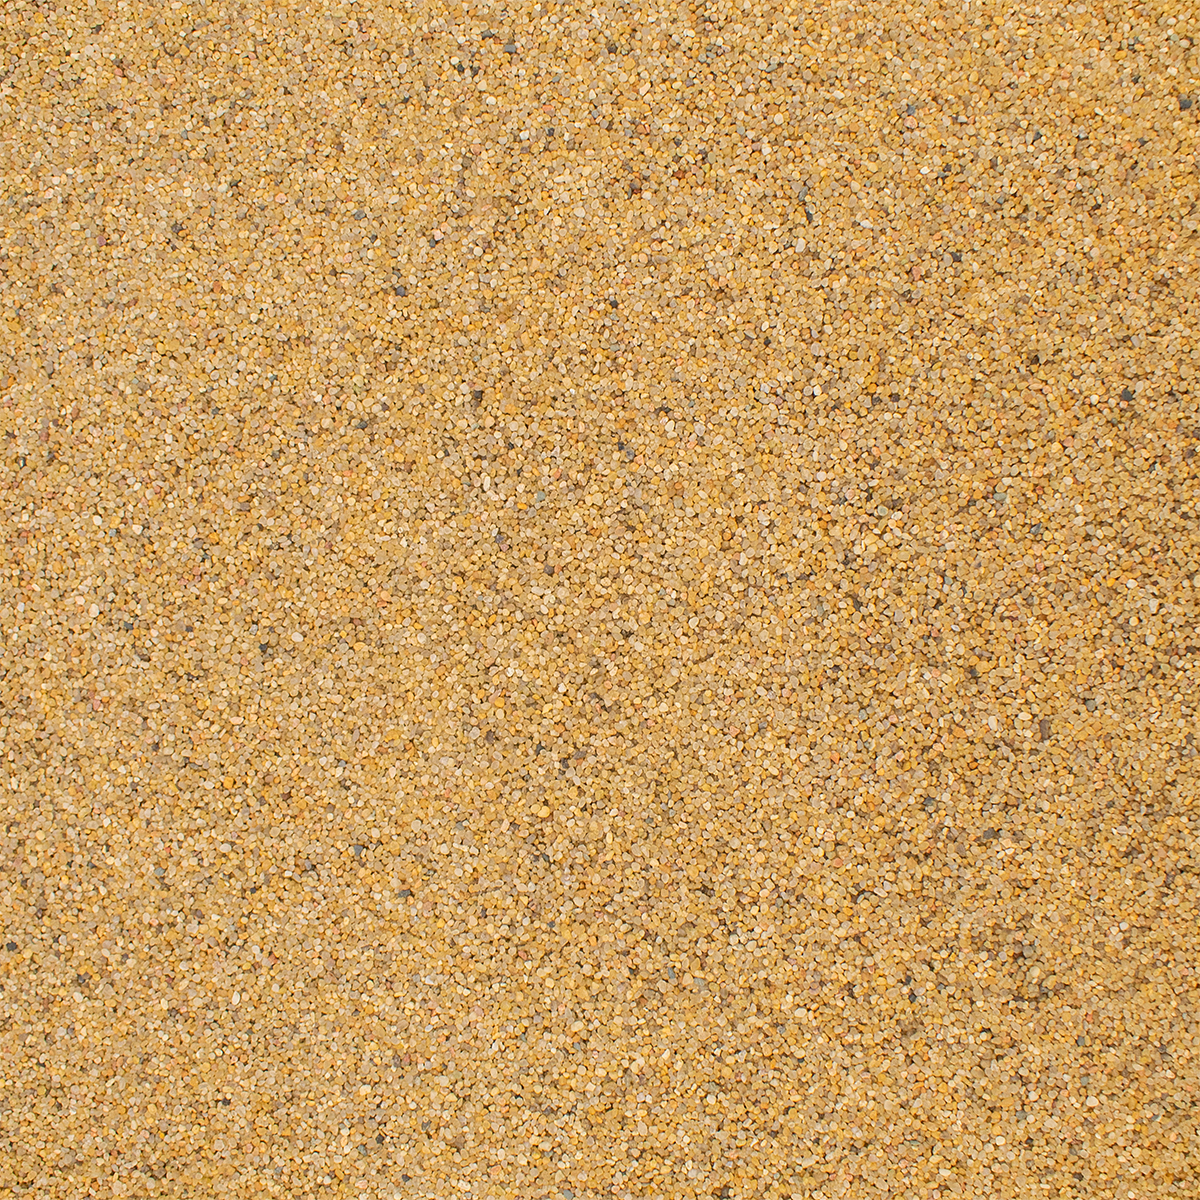 Грунт для аквариума NOVAMARK HARDSCAPING Янтарный песок 0,8-1,4 мм (River Amber), 2л